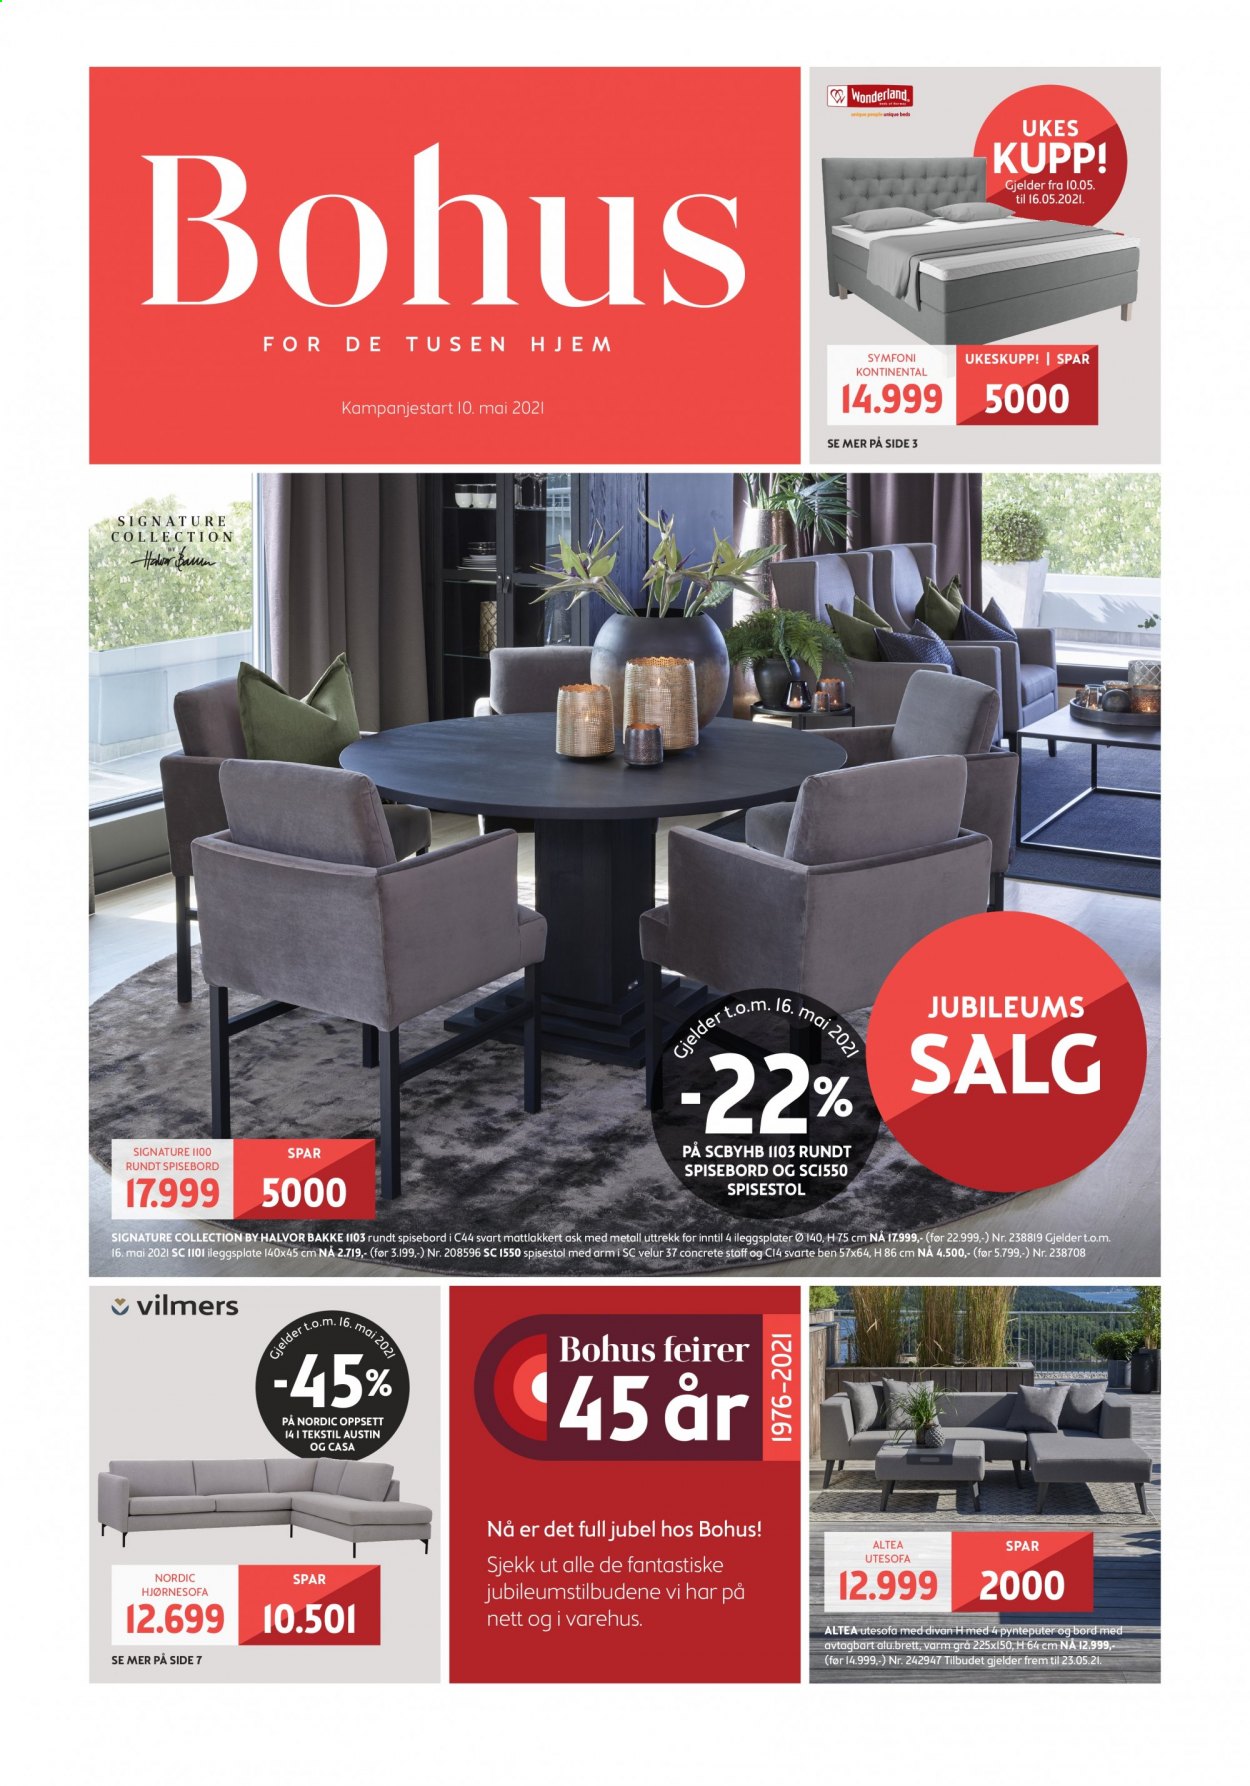 thumbnail - Kundeavis Bohus - 10.5.2021 - 13.6.2021 - Produkter fra tilbudsaviser - pute, bord, spisebord, stol, spisestol, hjørnesofa, sofa. Side 1.